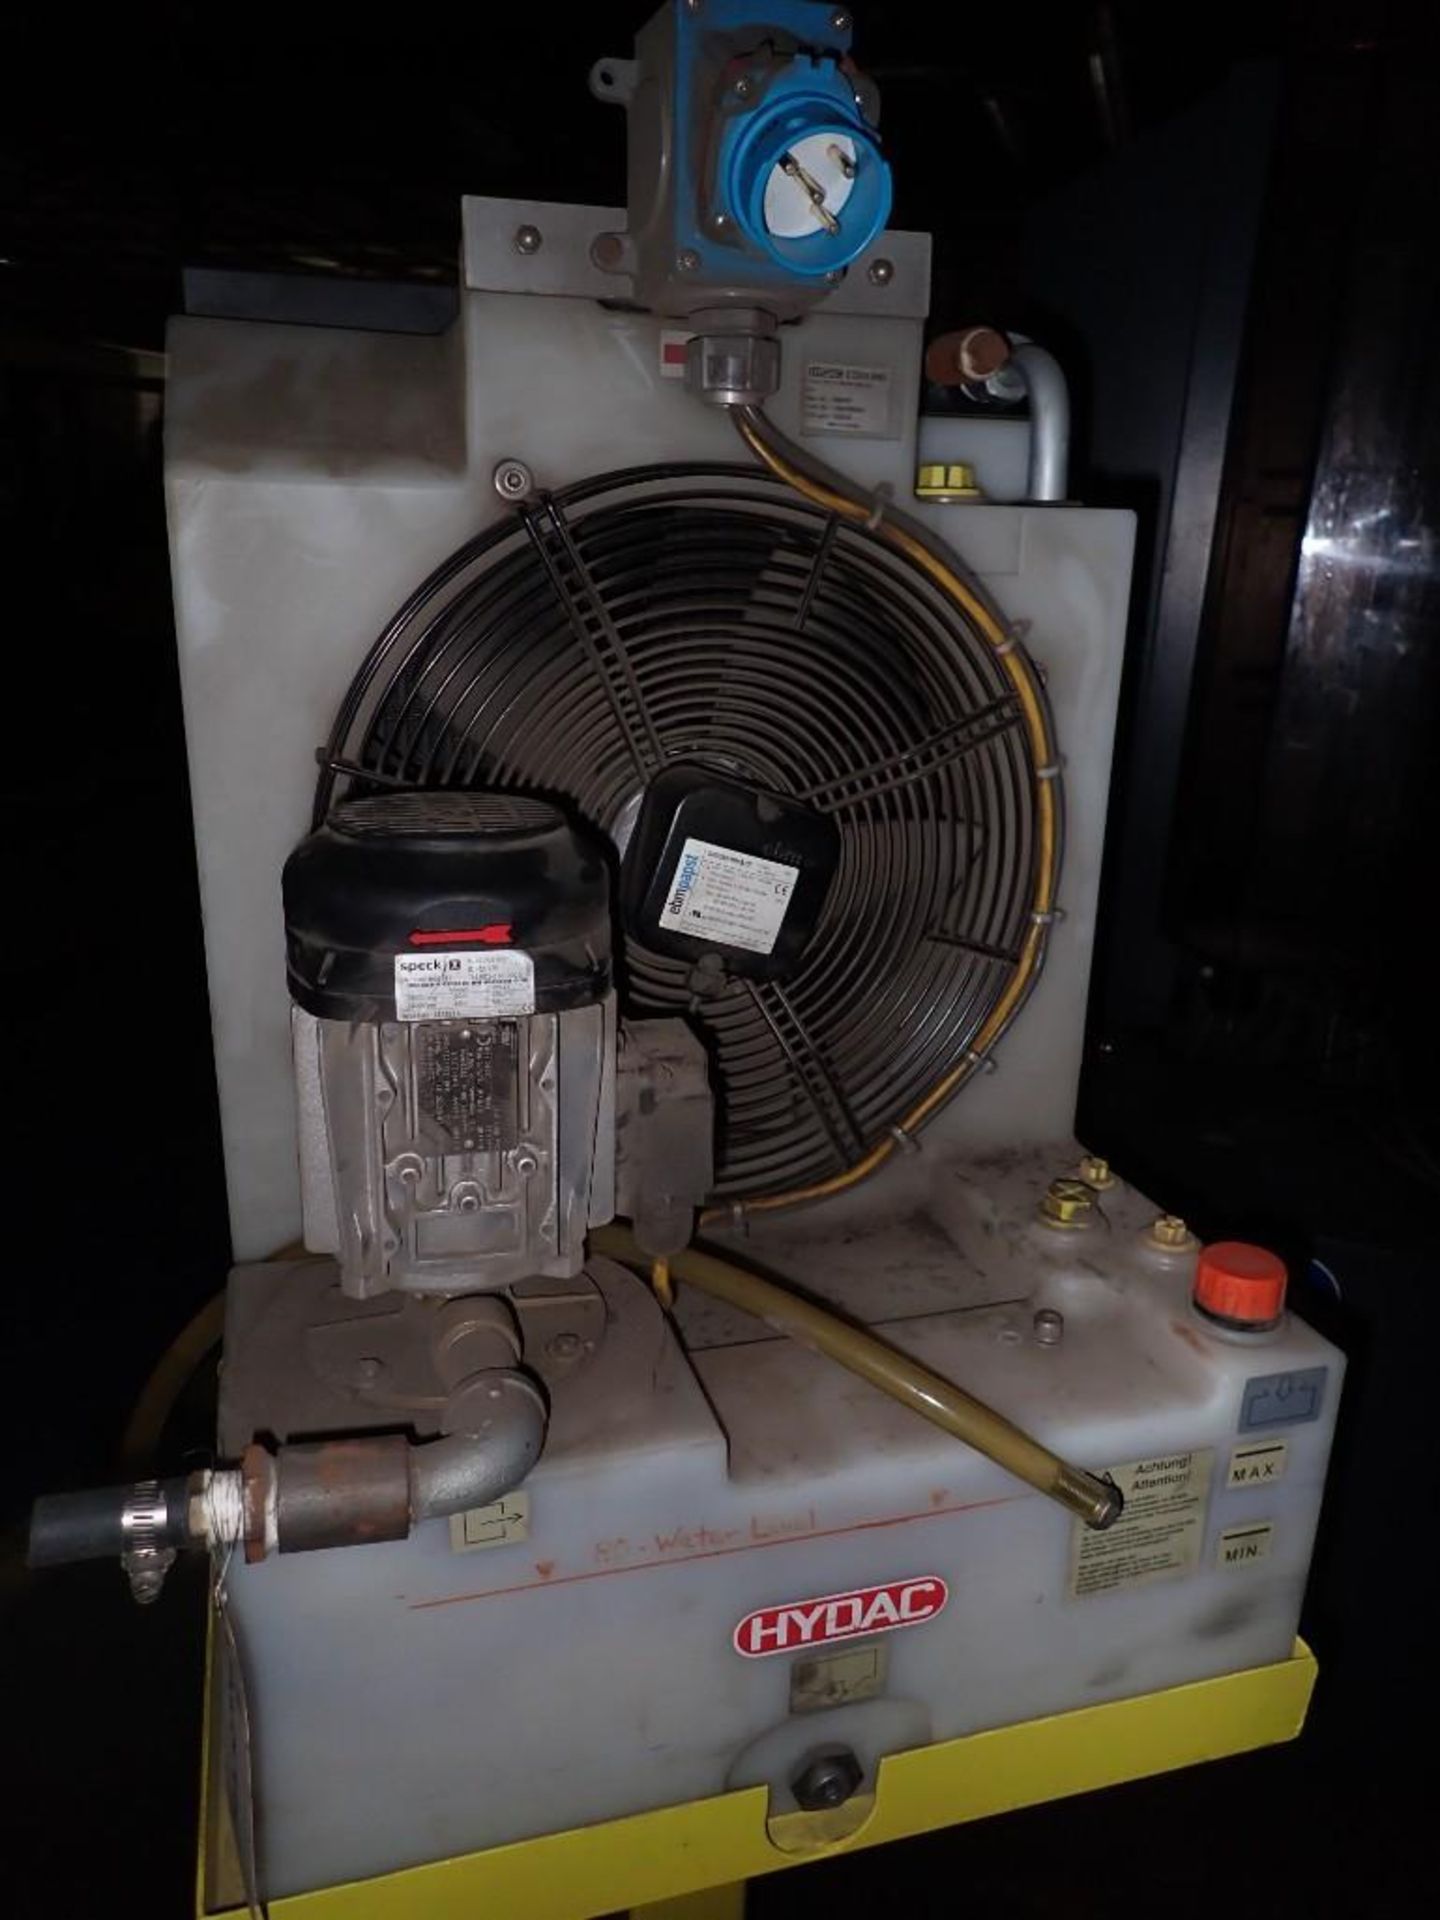 Hydac #FLKS-3S/3.1/W/601A0CUL Fluid/Air Cooling System